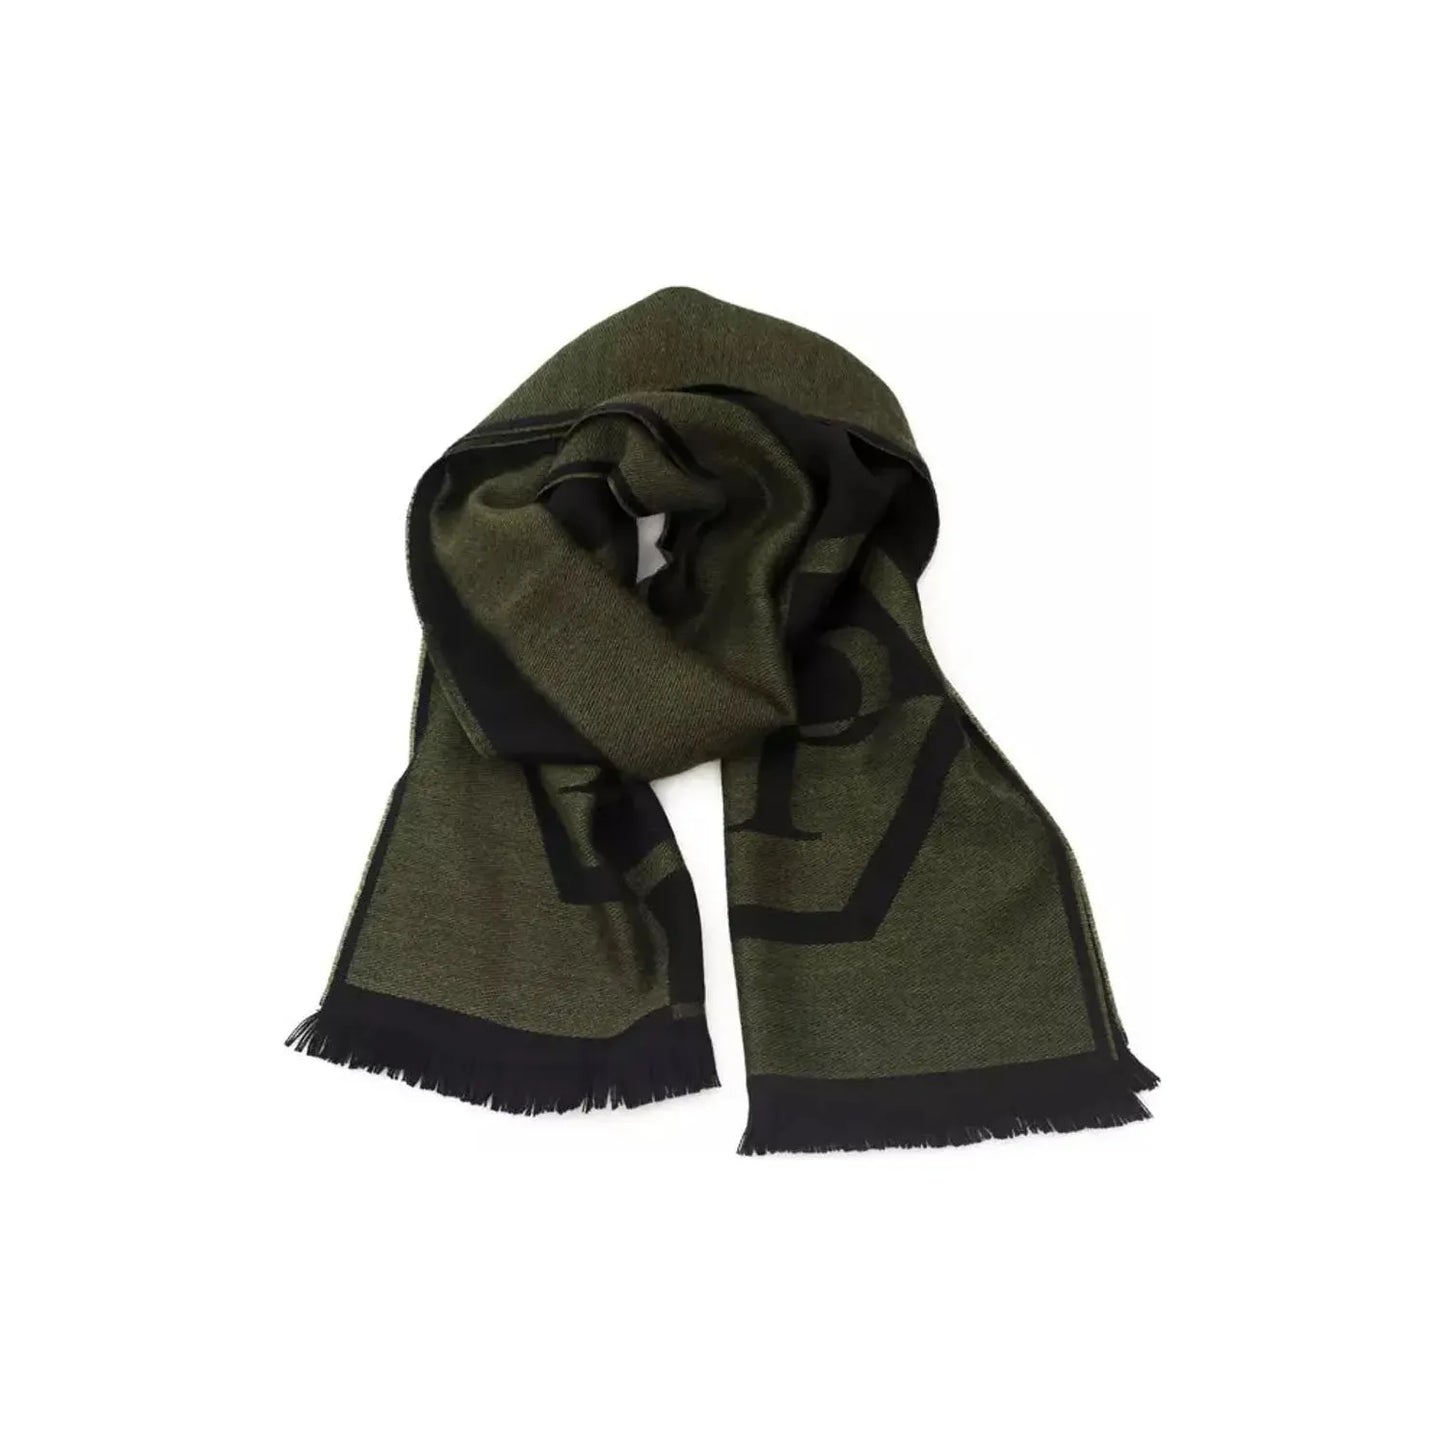 Philipp Plein Plush Fringed Logo Scarf in Lush Green Wool Wrap Shawl Scarf green-wool-scarf-1 product-22230-597713272-23-9392fb0f-75d.webp